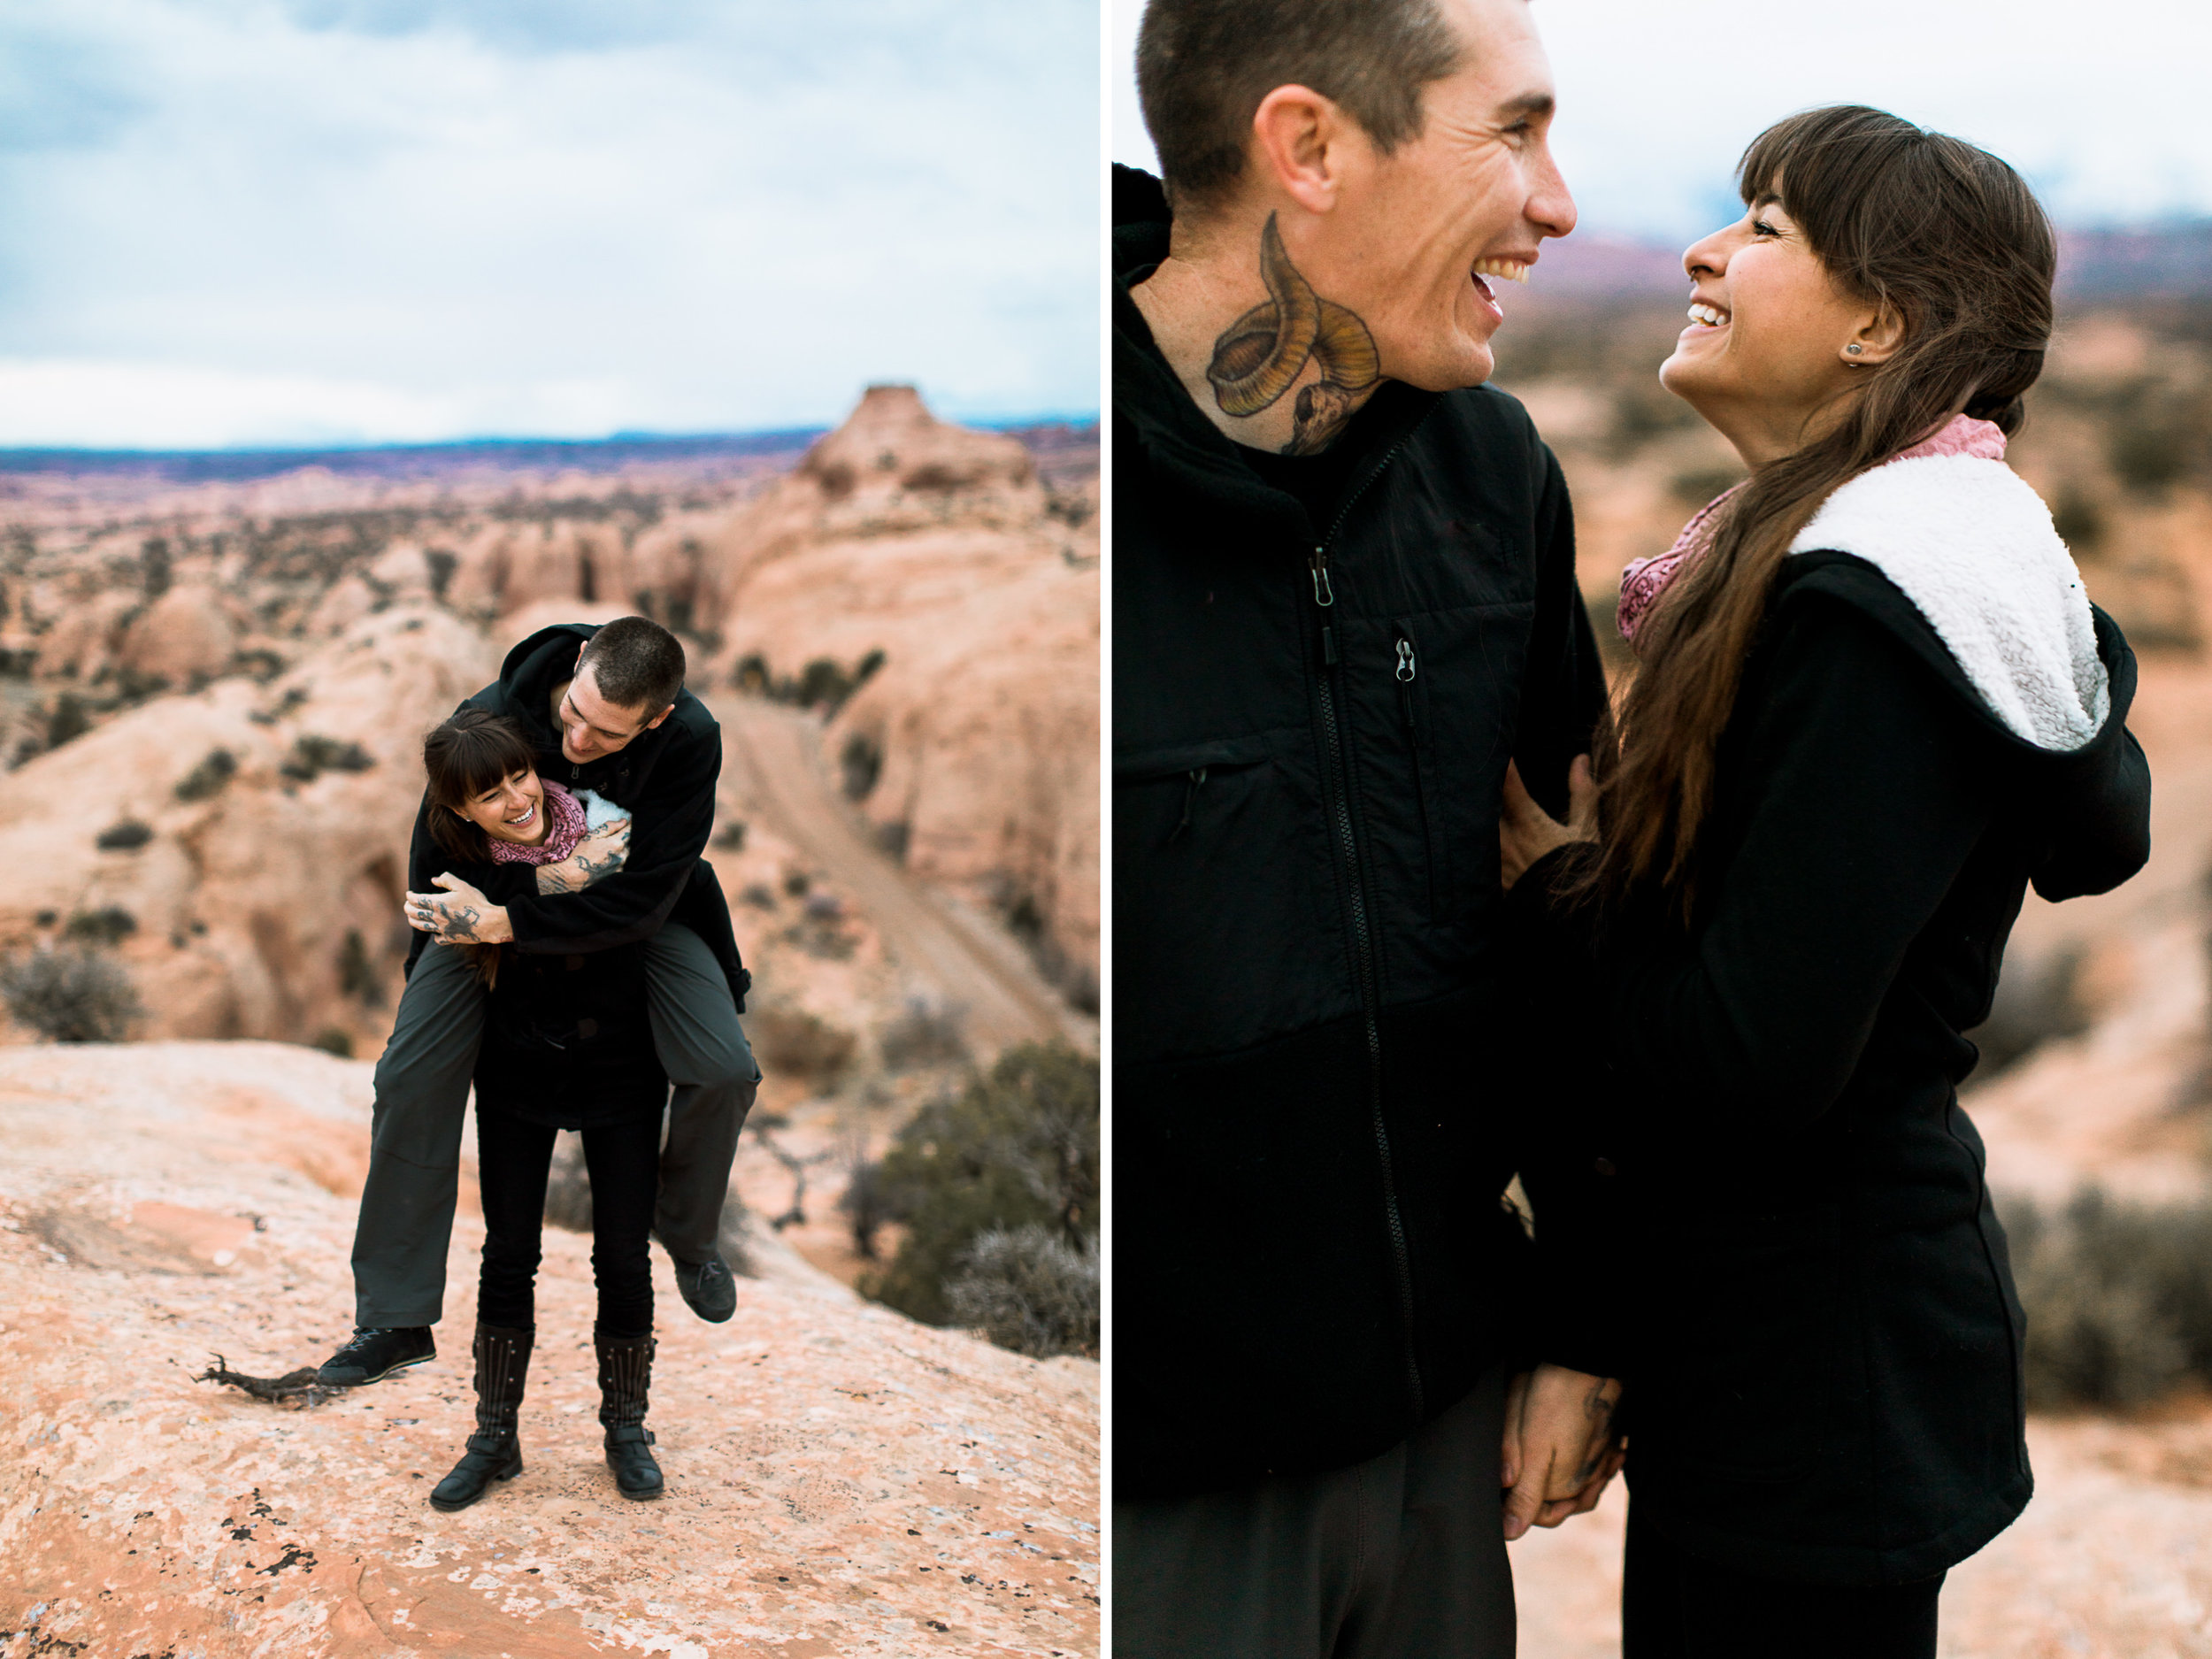 moab mountain + desert engagement session // utah adventure wedding photographer // www.abbihearne.com